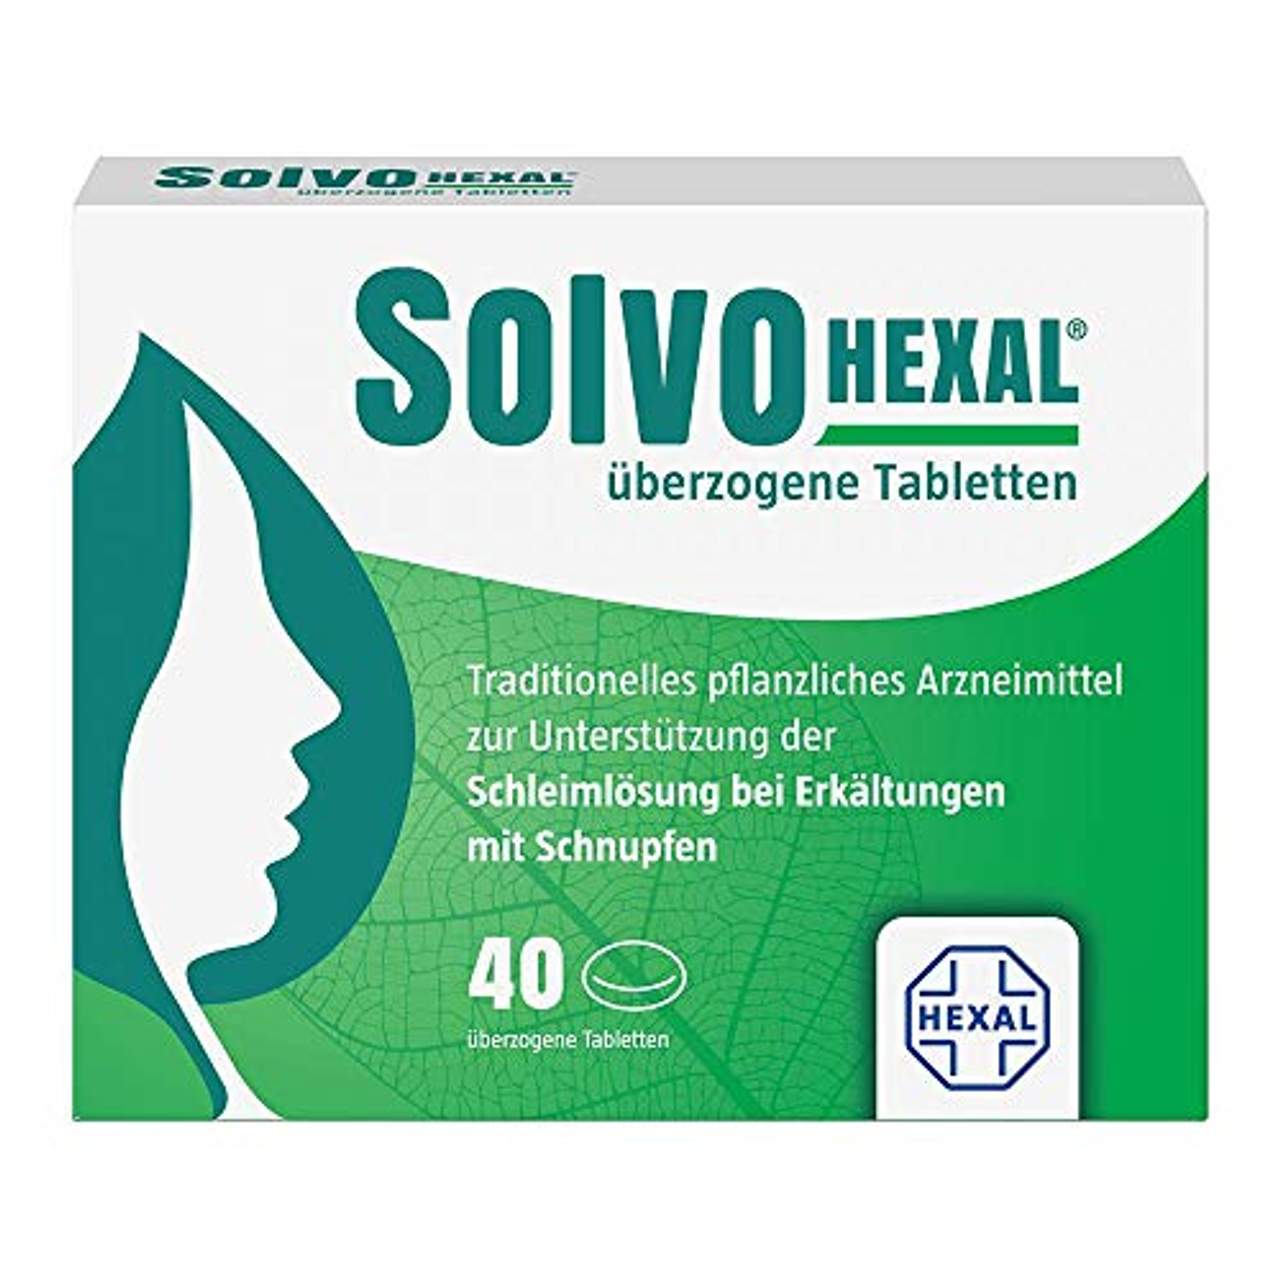 Hexal SolvoHexal überzogene Tabletten